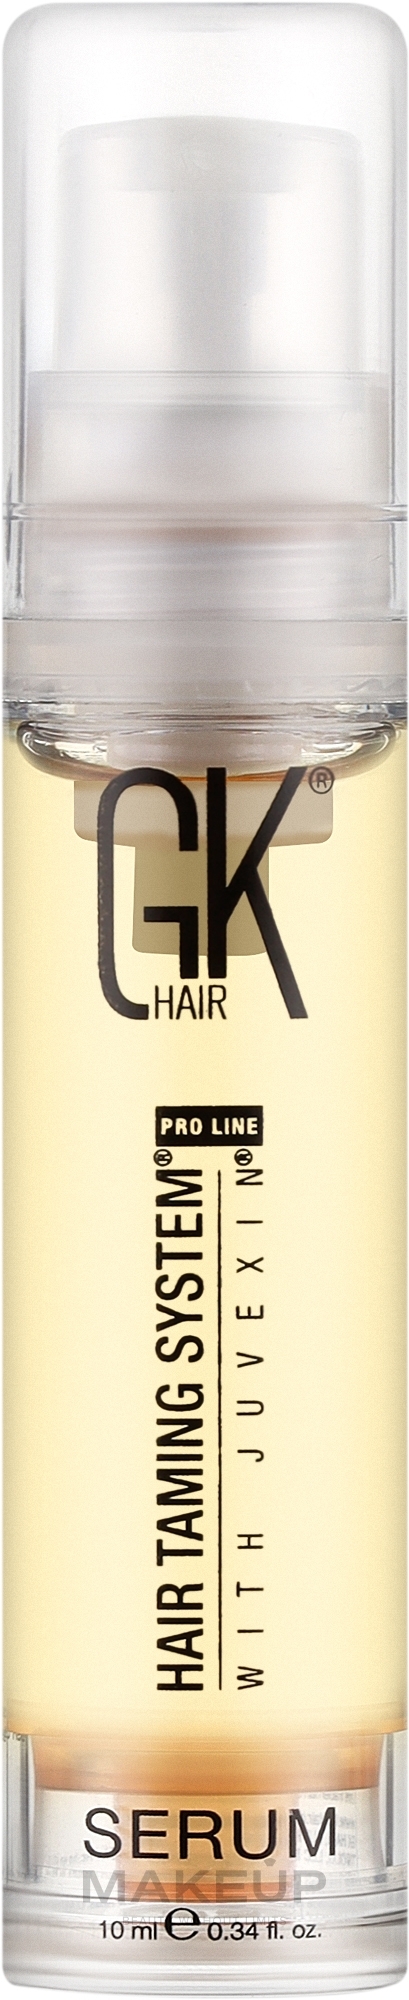 Jedwab do włosów - GKhair Serum — Zdjęcie 10 ml